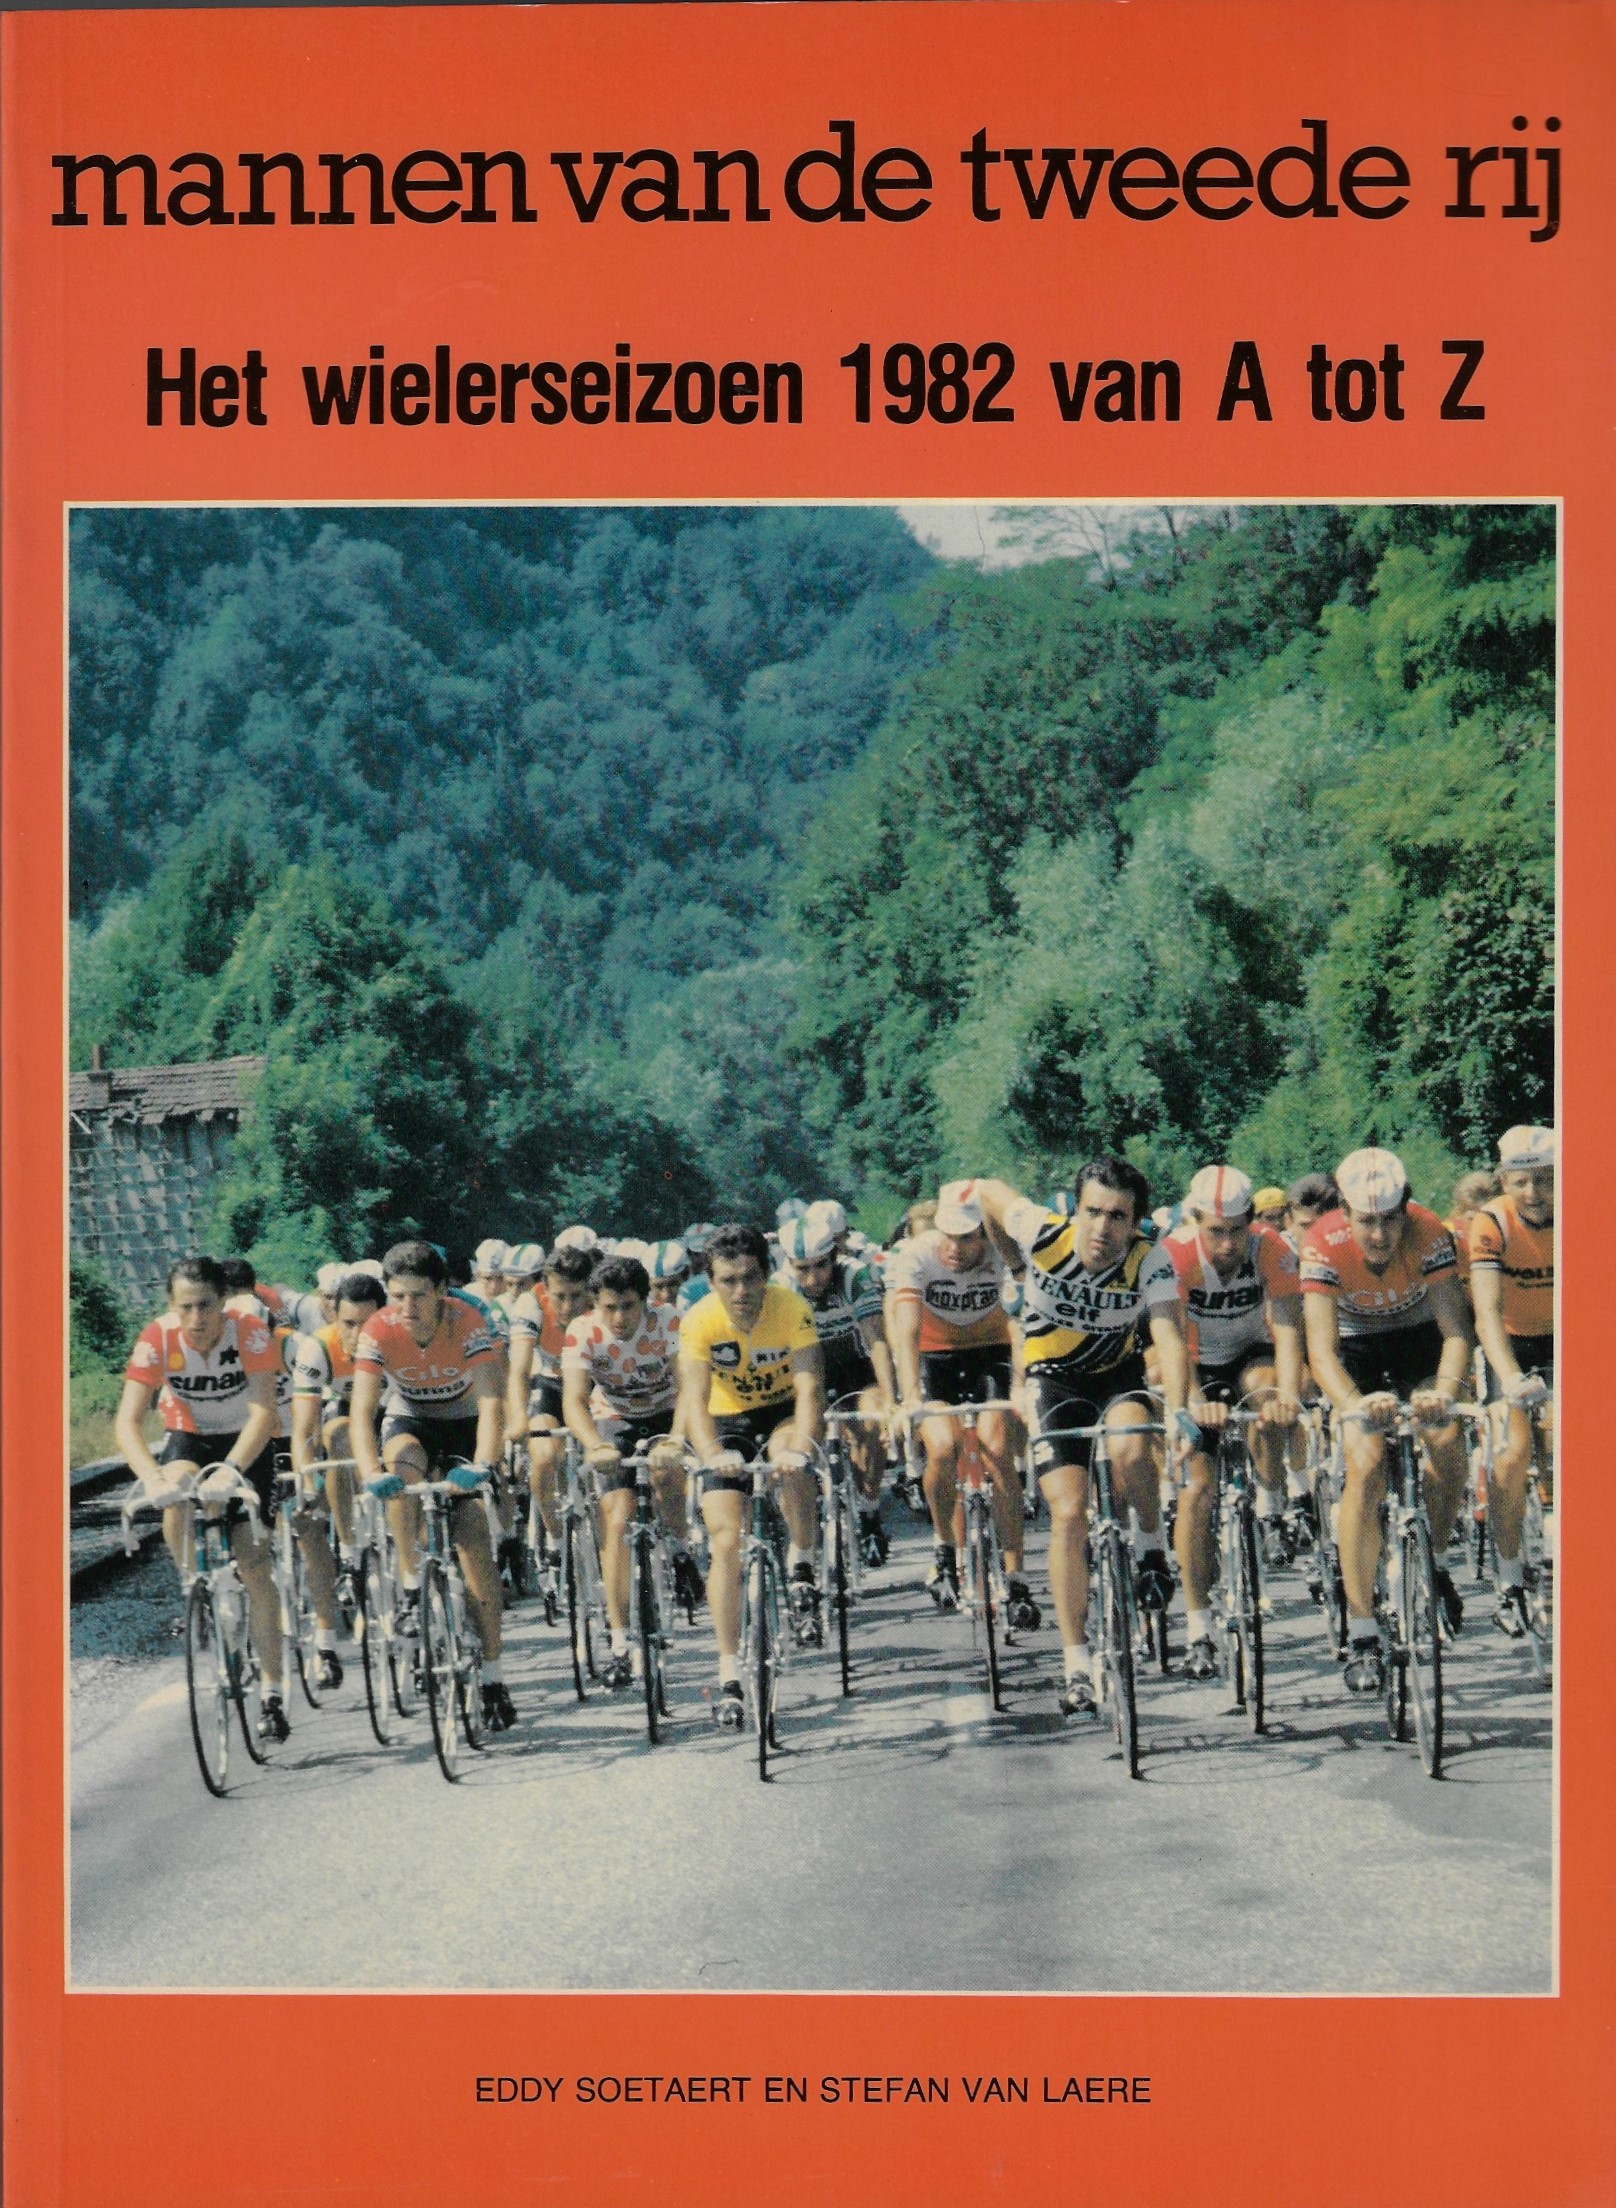 Soetaert, Eddy en Van Laere, Stefan - Het wielerseizoen 1982 van A tot Z - Mannen van de tweede rij